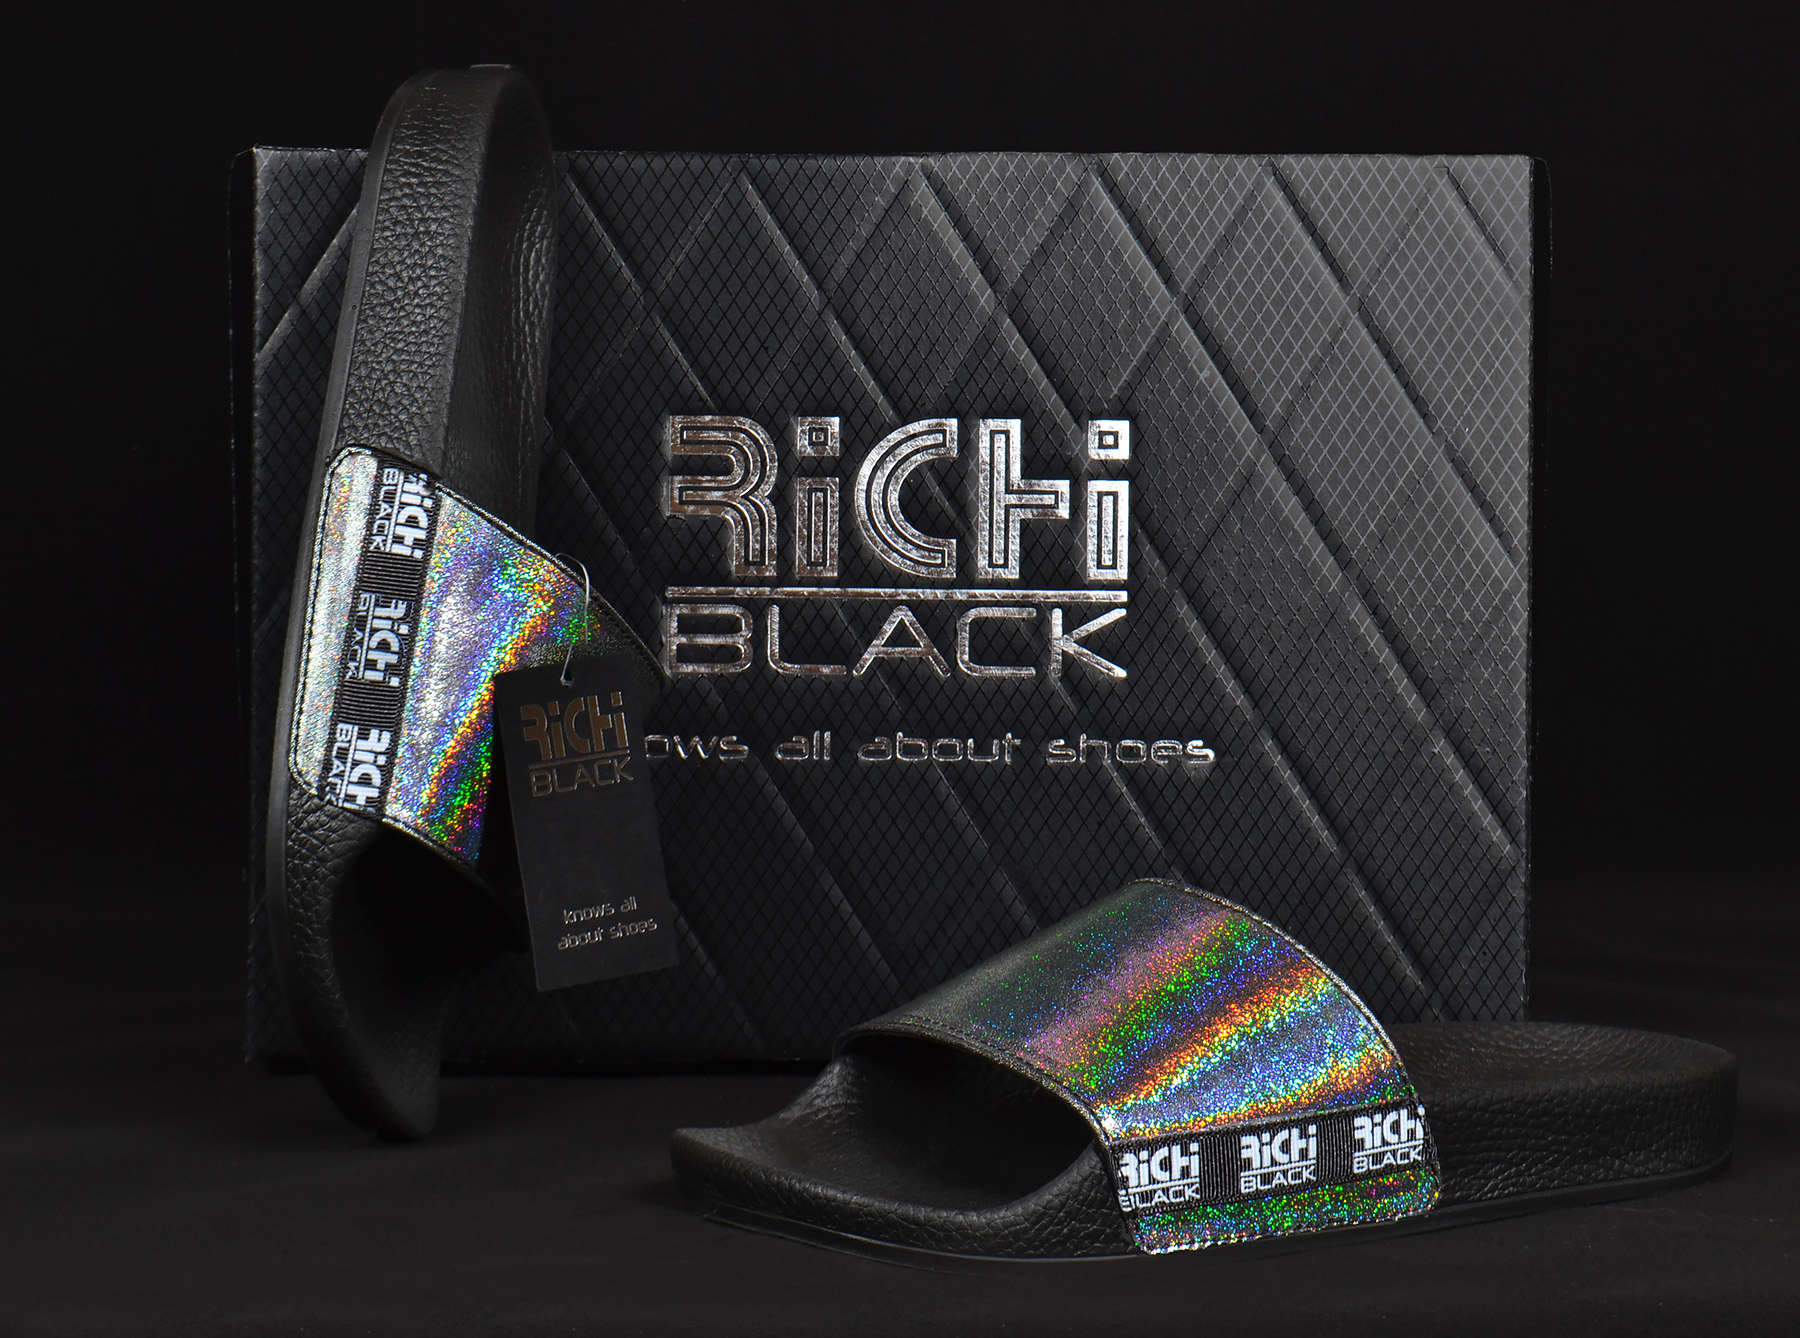 Самые модные шлепанцы 2020 голографик (holographic) ТМ Richi Black из натуральной кожи купить в Украине